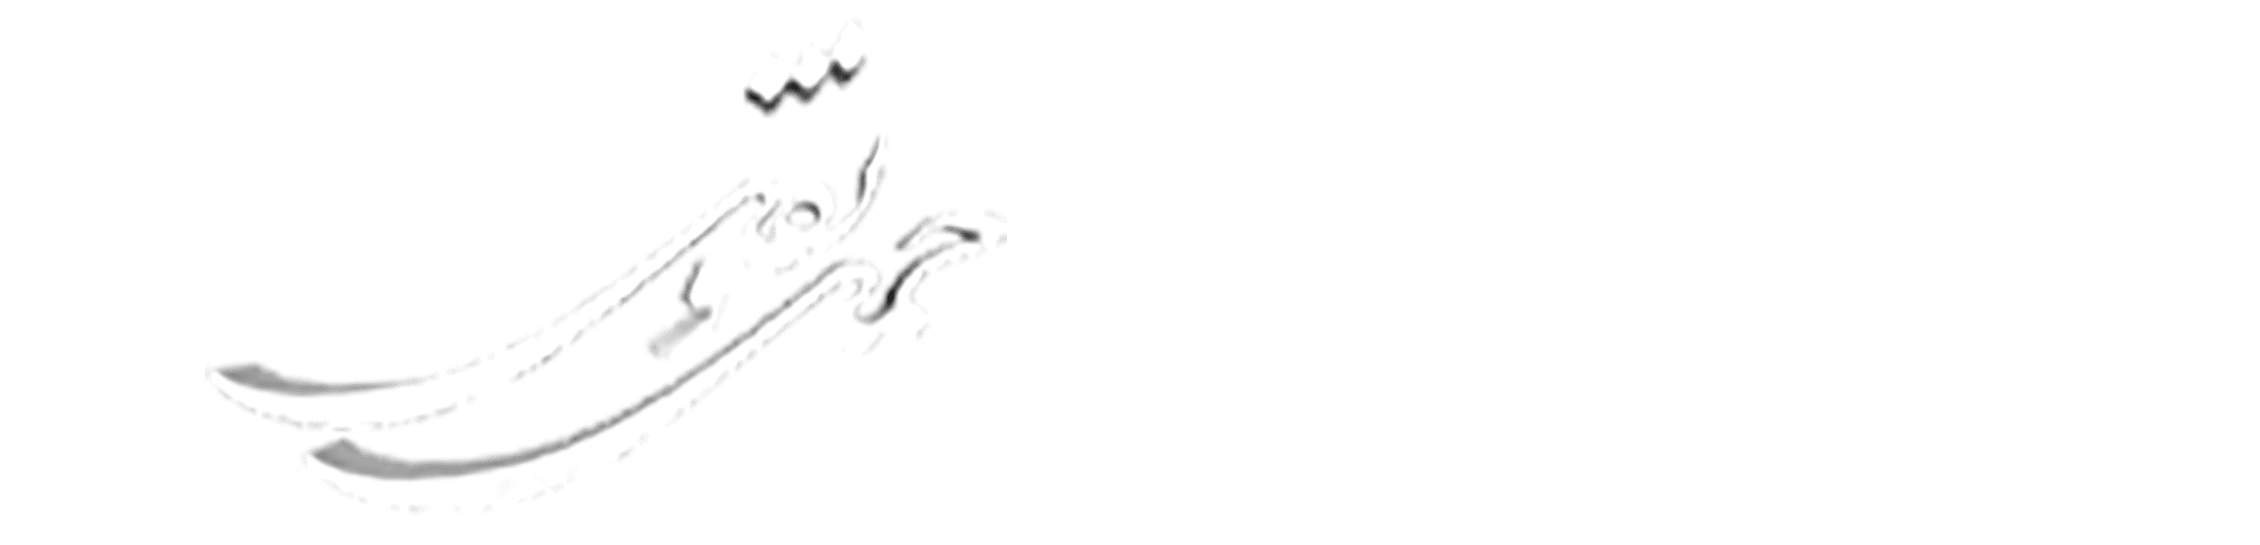 انجمن صنفی شرکتهای حمل و نقل بین المللی ایران